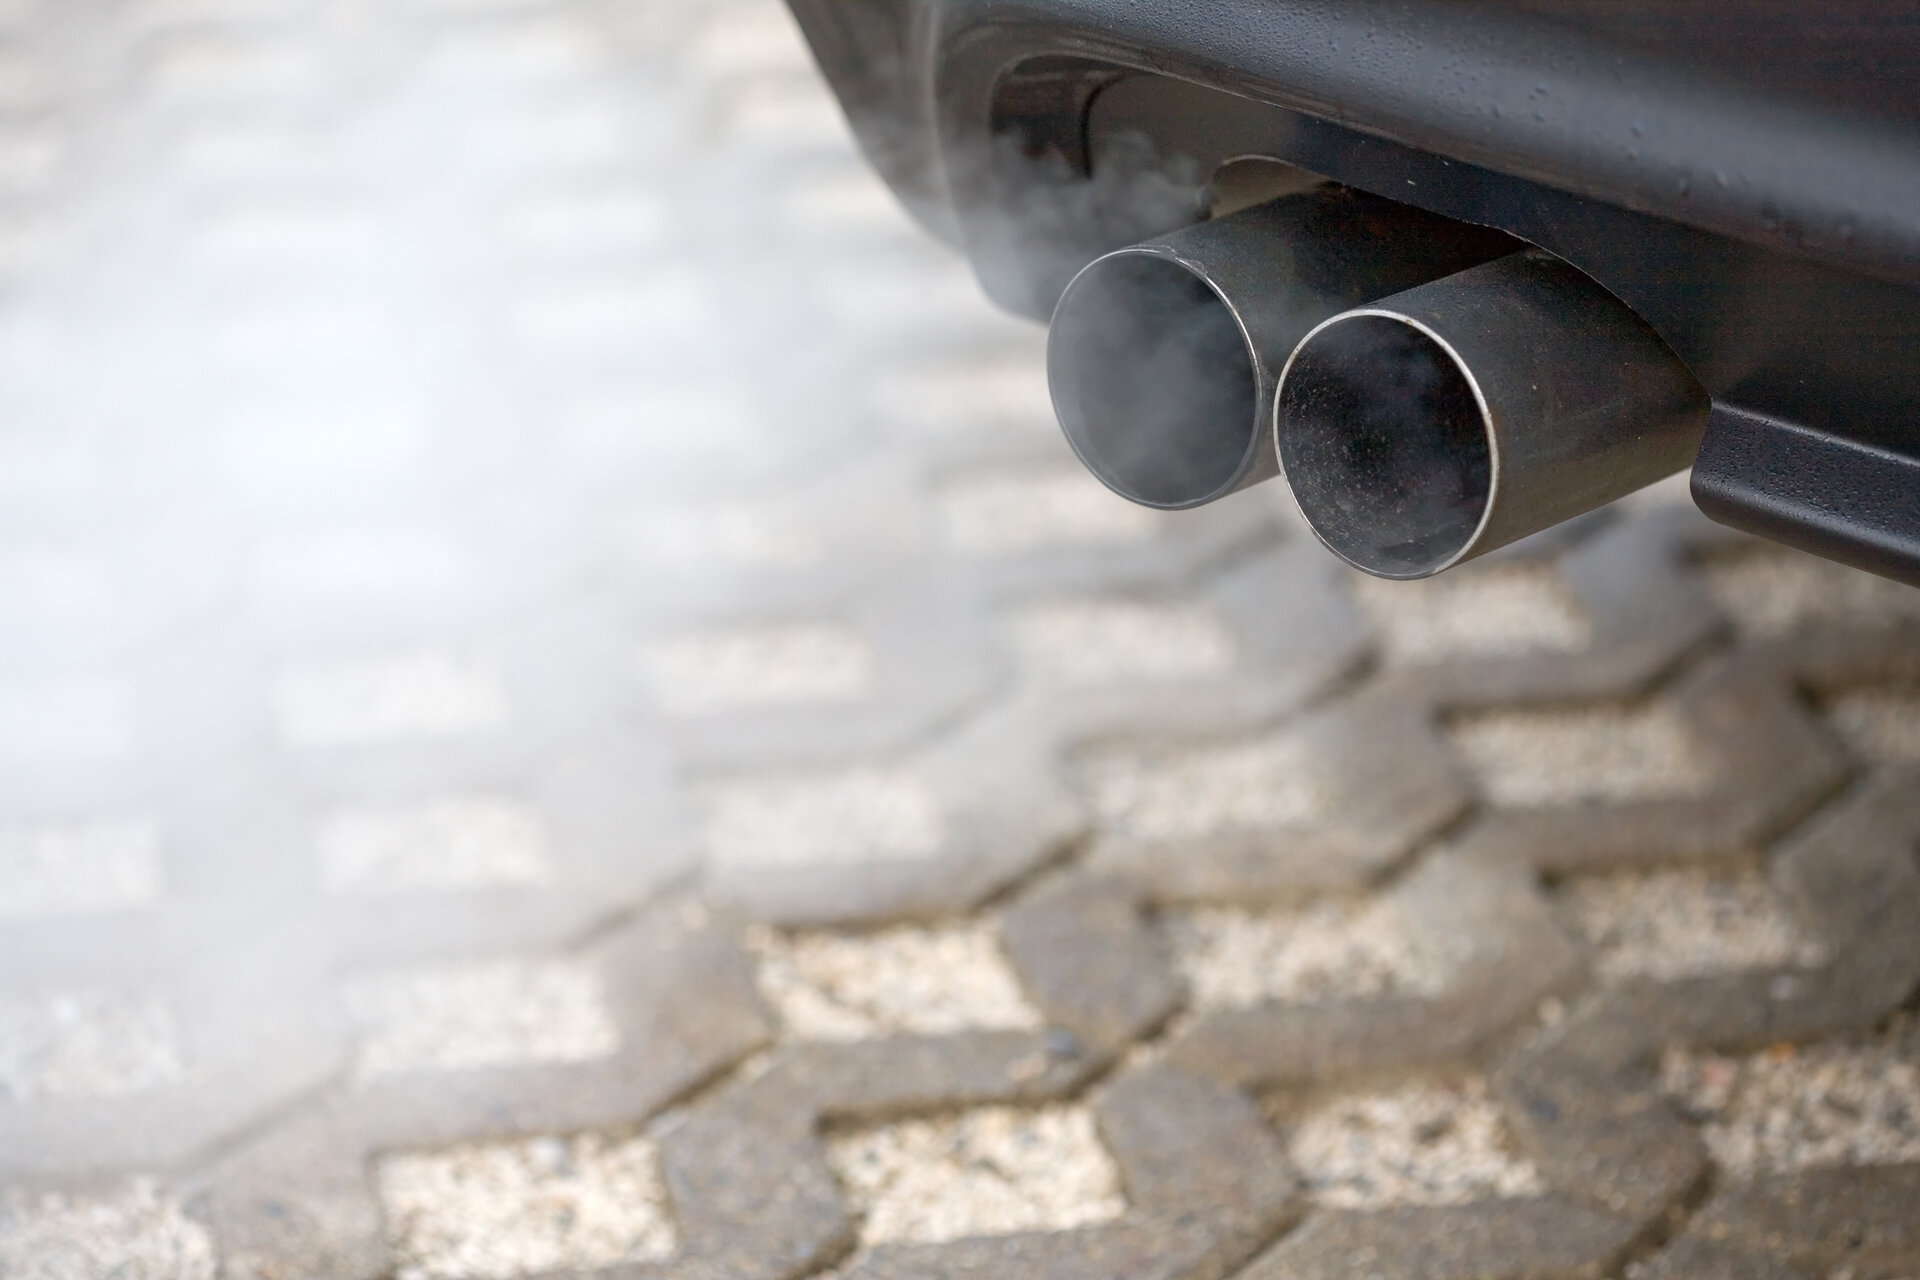 LIQUI MOLY Dieselpartikelfilterschutz (5148) ab 7,37 € (Februar